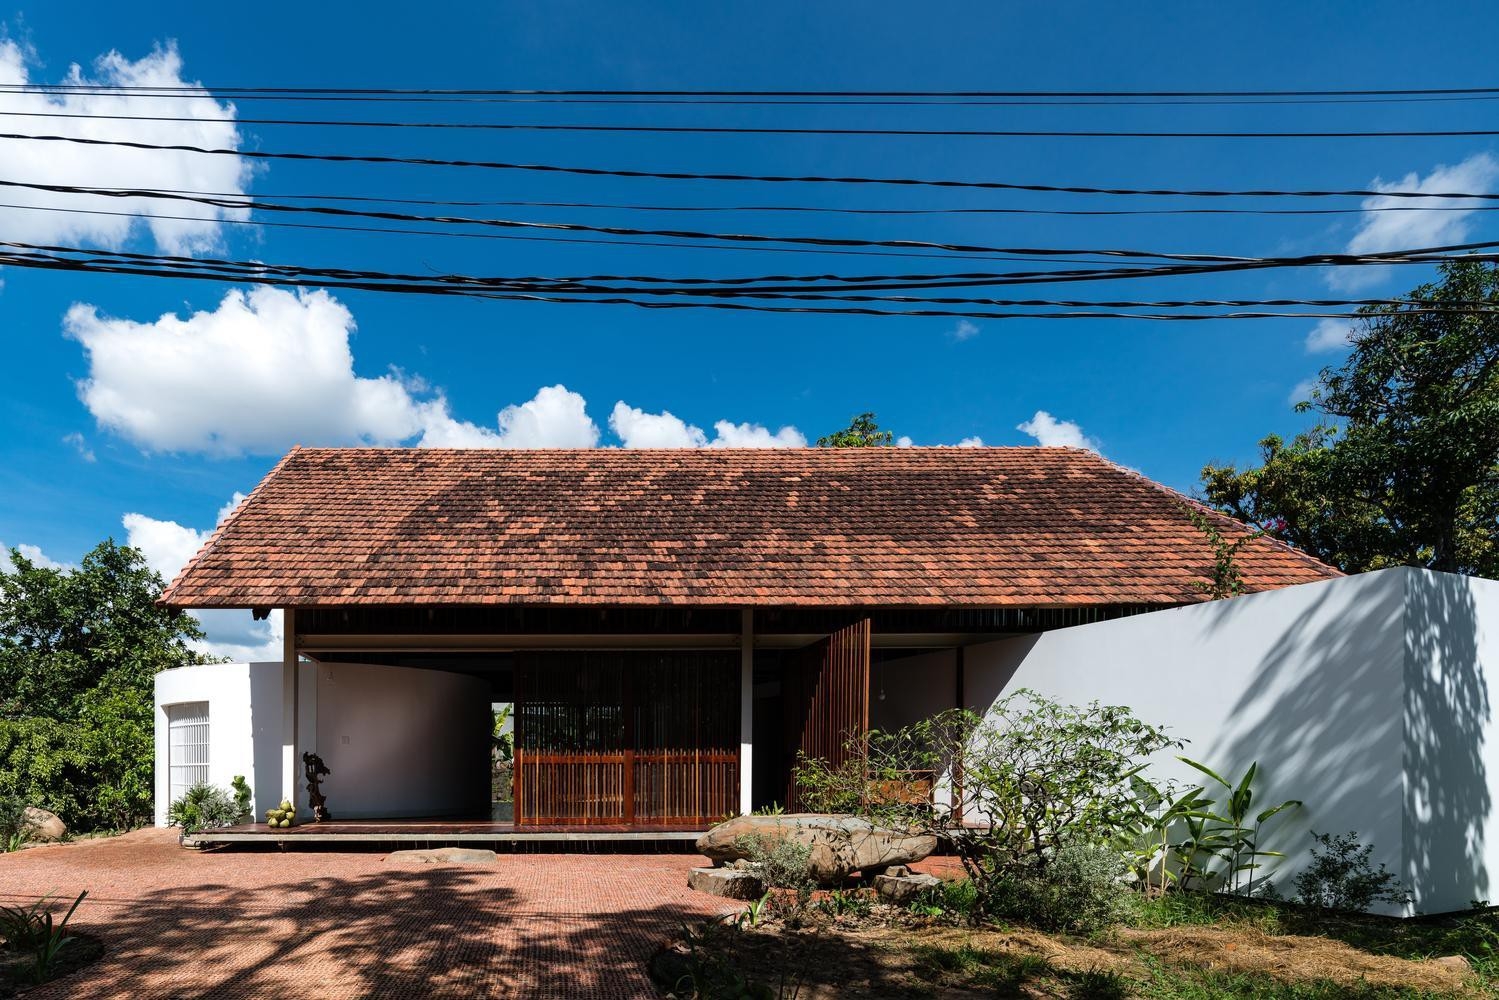 Kiến trúc nhà mái ngói cổ truyền của Việt Nam